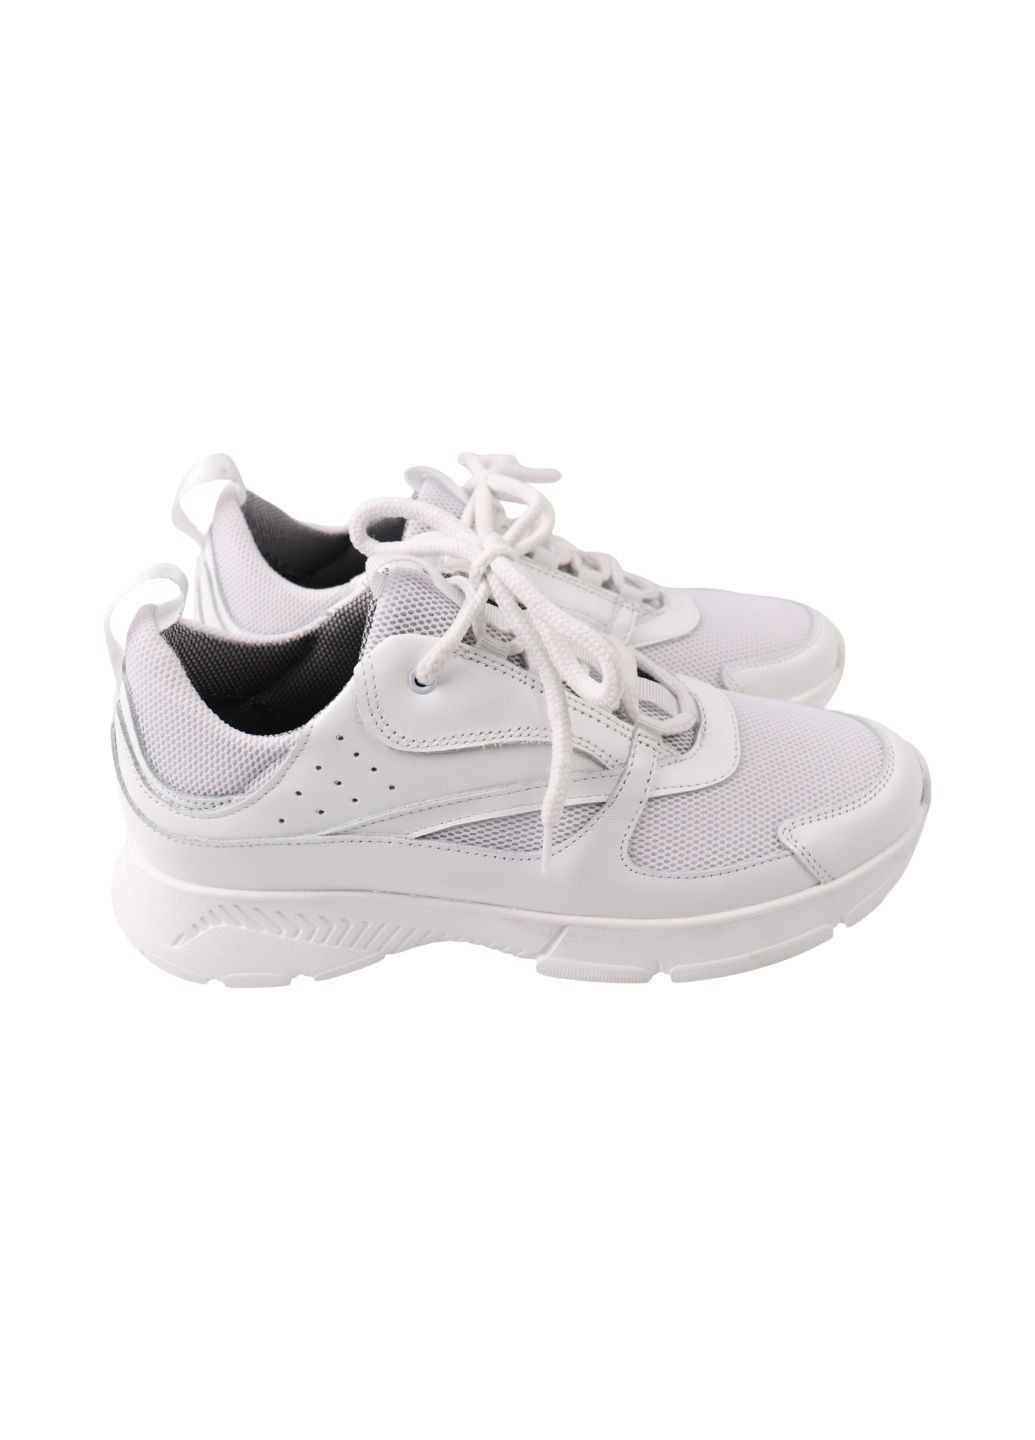 Білі кросівки чоловічі білі текстиль Vadrus 551-24DTS